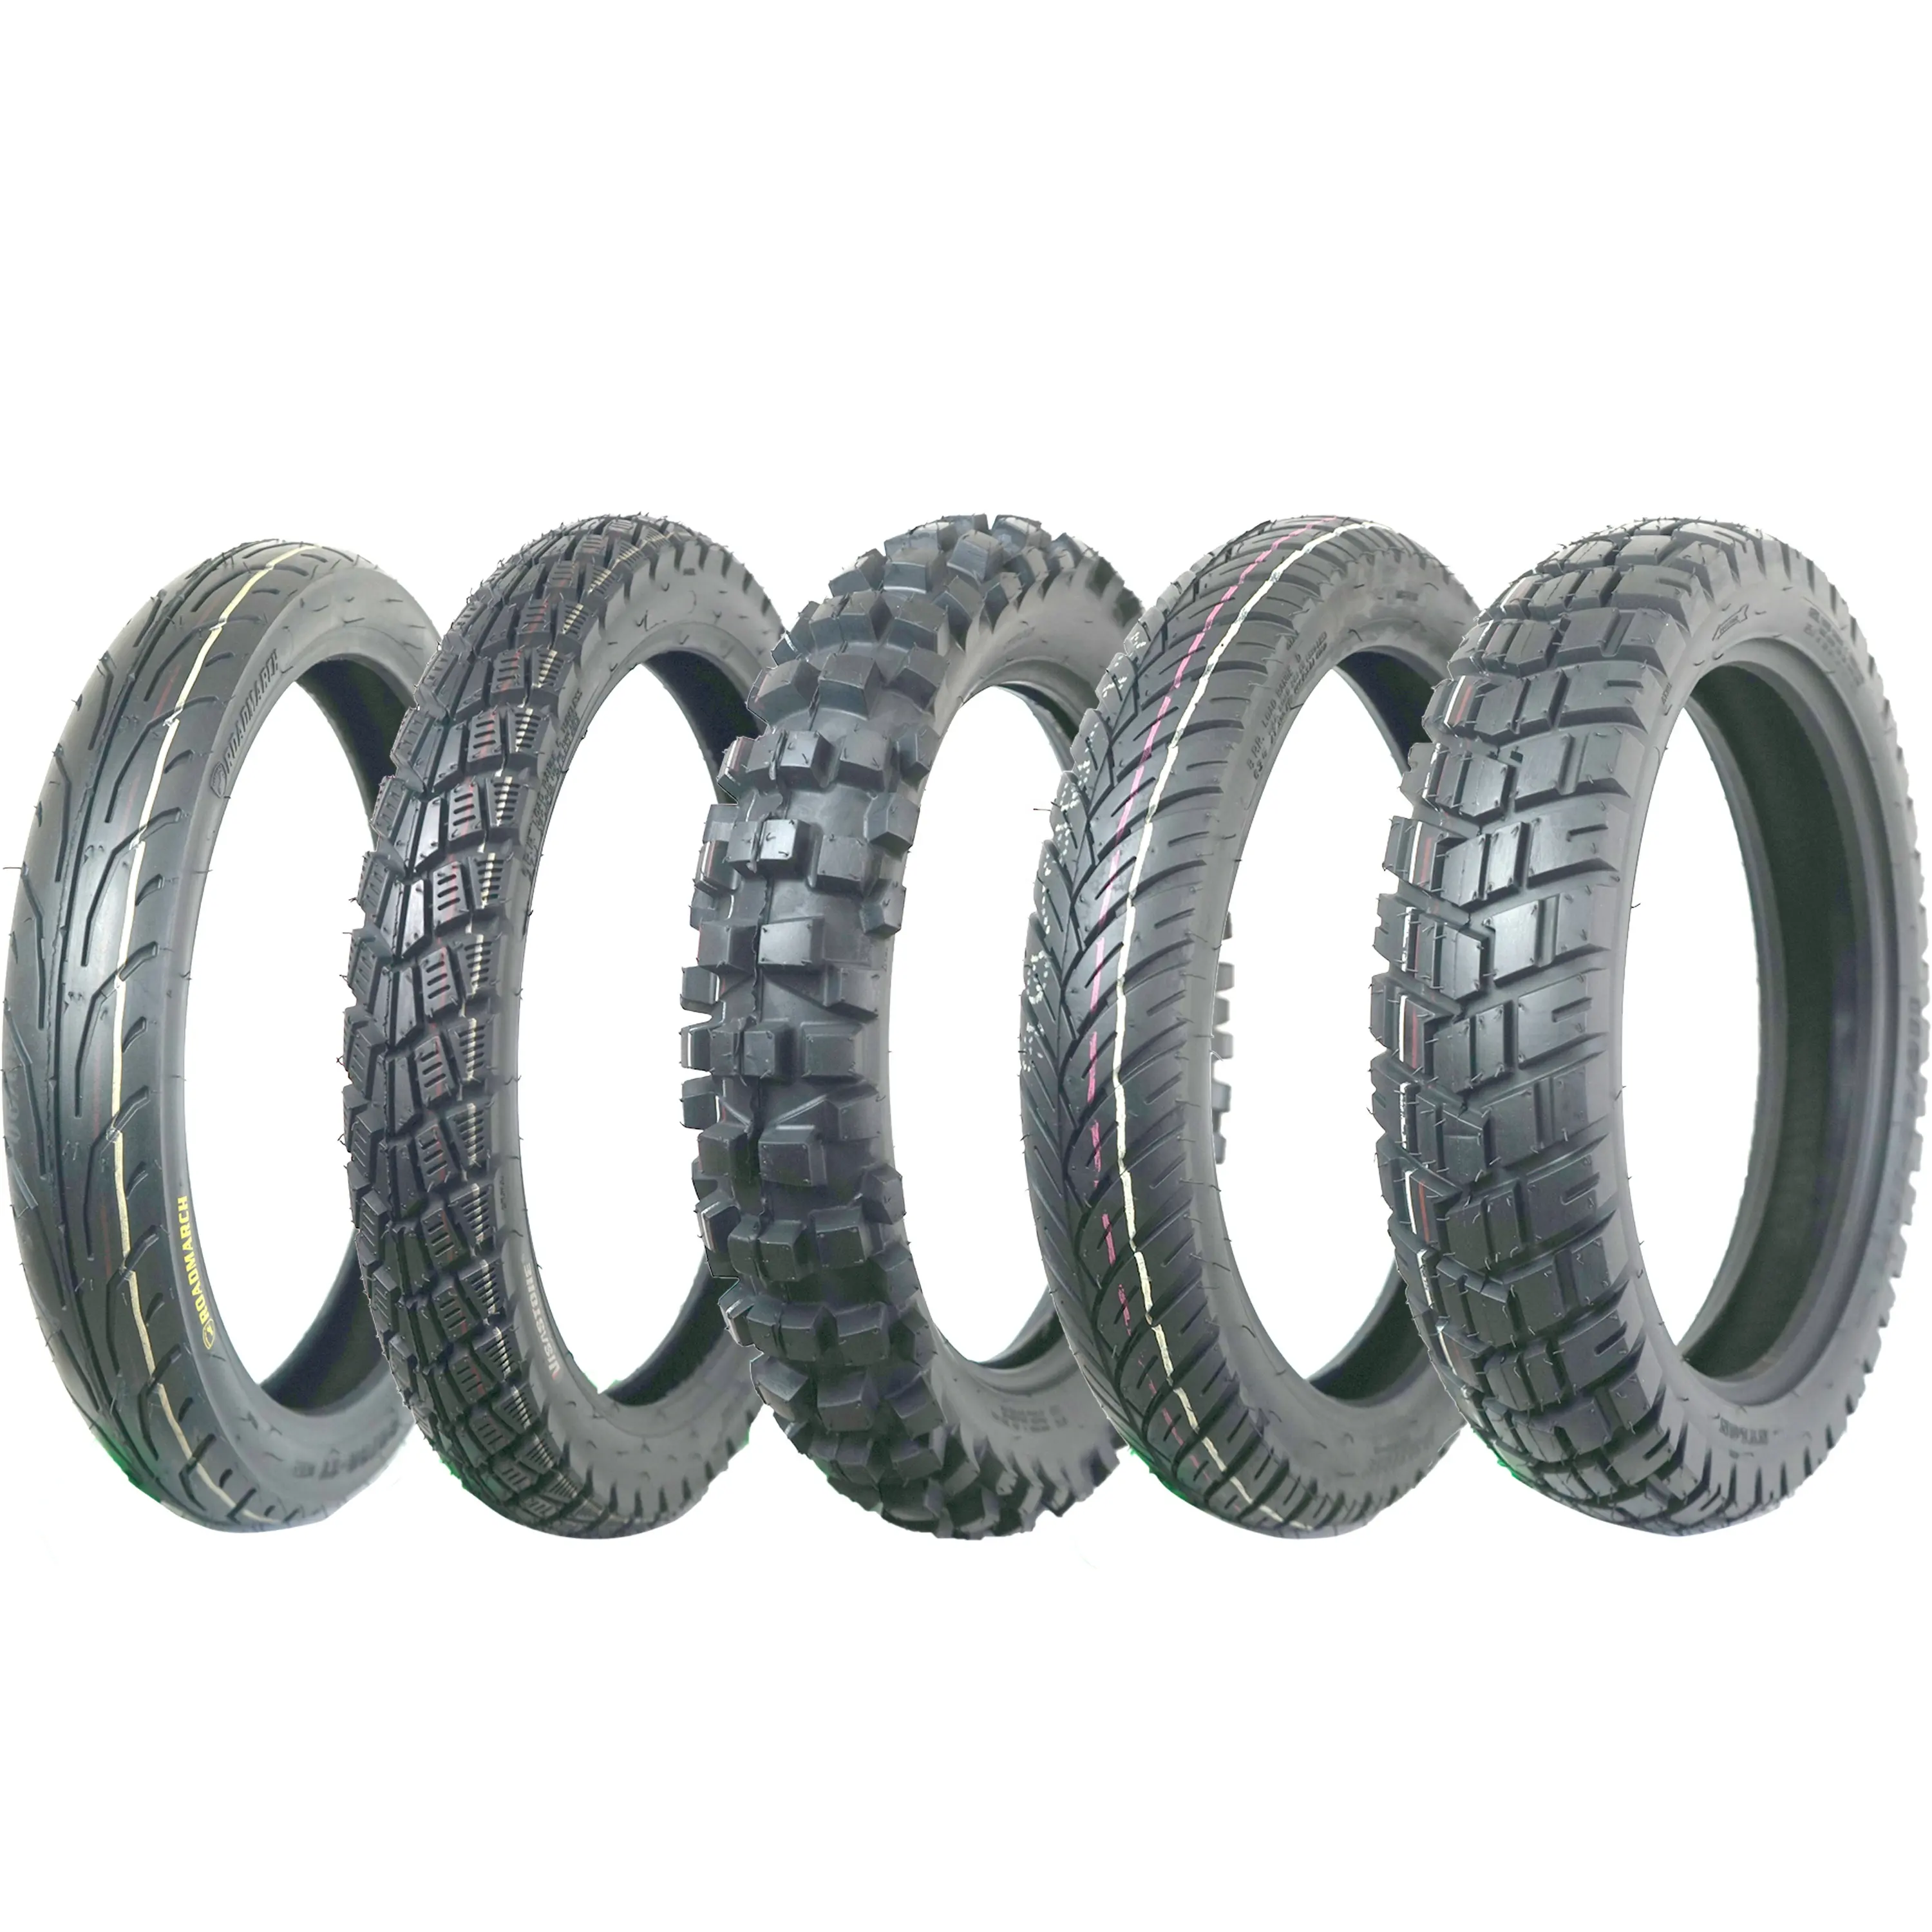 전문 제조 업체 타이어 오토바이 최고 품질 TT/TL 오토바이 타이어, 세발 자전거 타이어 300-17 300-18 110/90-16 400-8 500-12